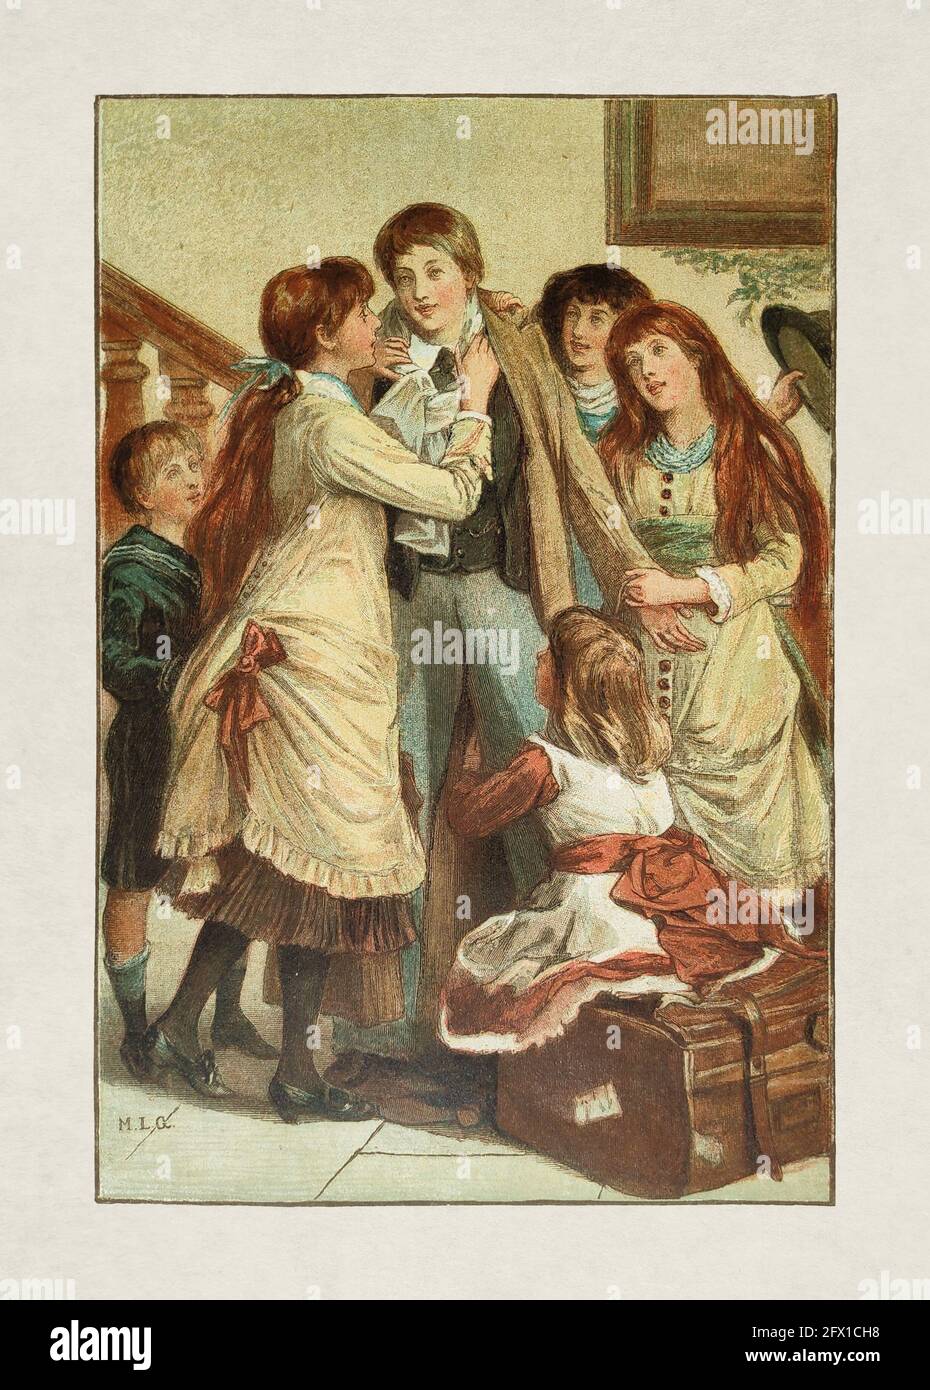 Illustration eines jungen Erwachsenen, der zu den Feiertagen nach Hause kommt, von Mary S. Gow, veröffentlicht am 1. November 1885 in der Monatszeitschrift 'Paris illustré'. Stockfoto